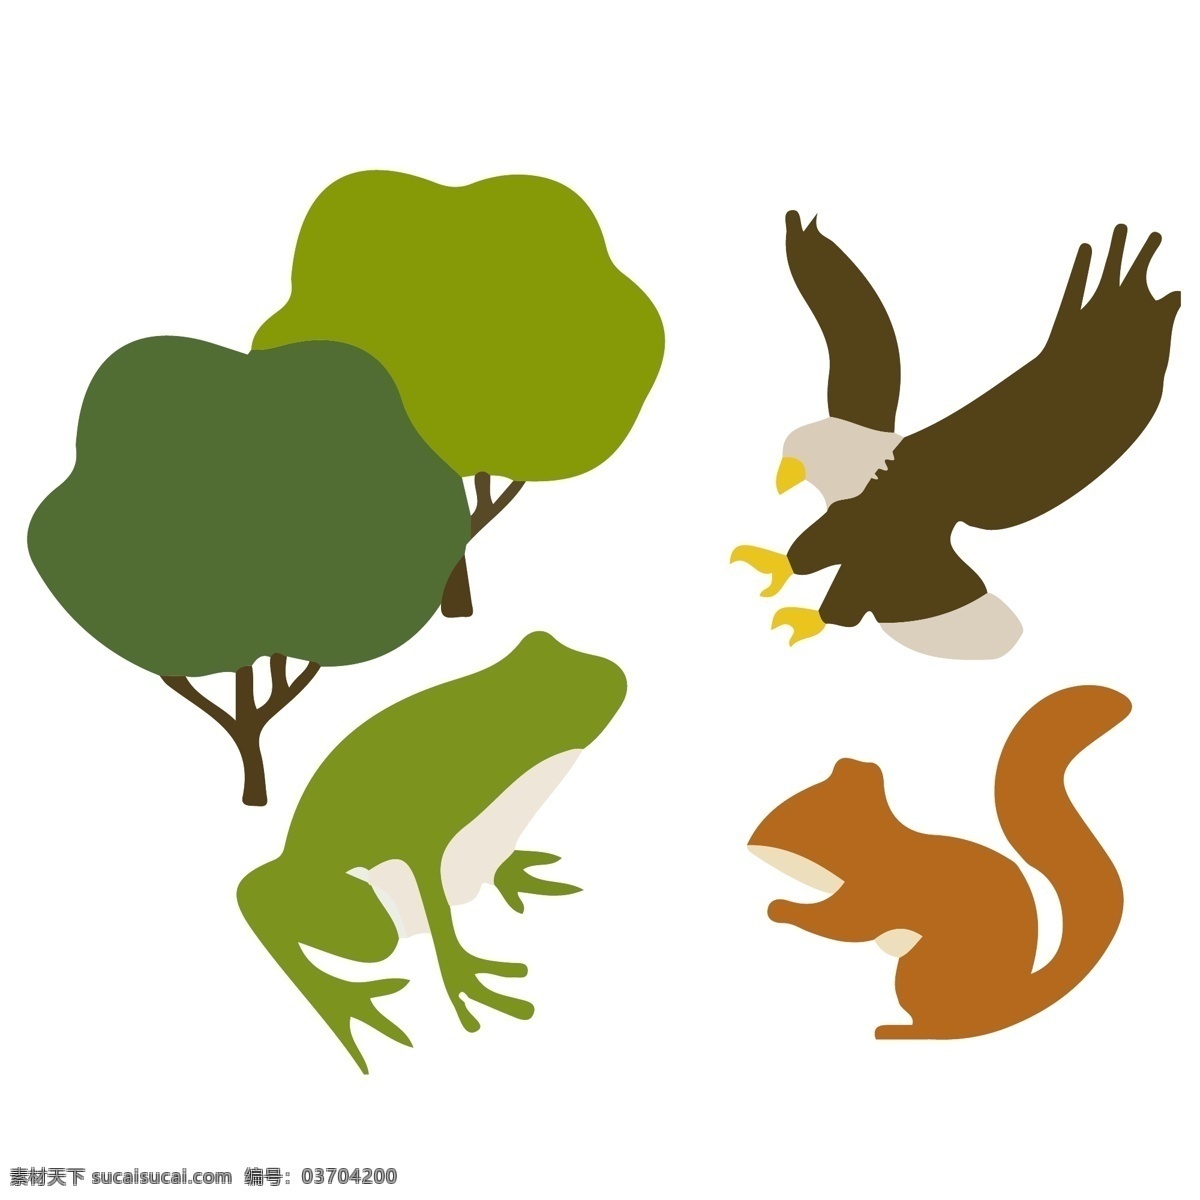 植物 动物保护 环境 类 插画 系列 套 图 动物 树木 可爱 青蛙 老鹰 松鼠 公园 扁平插画